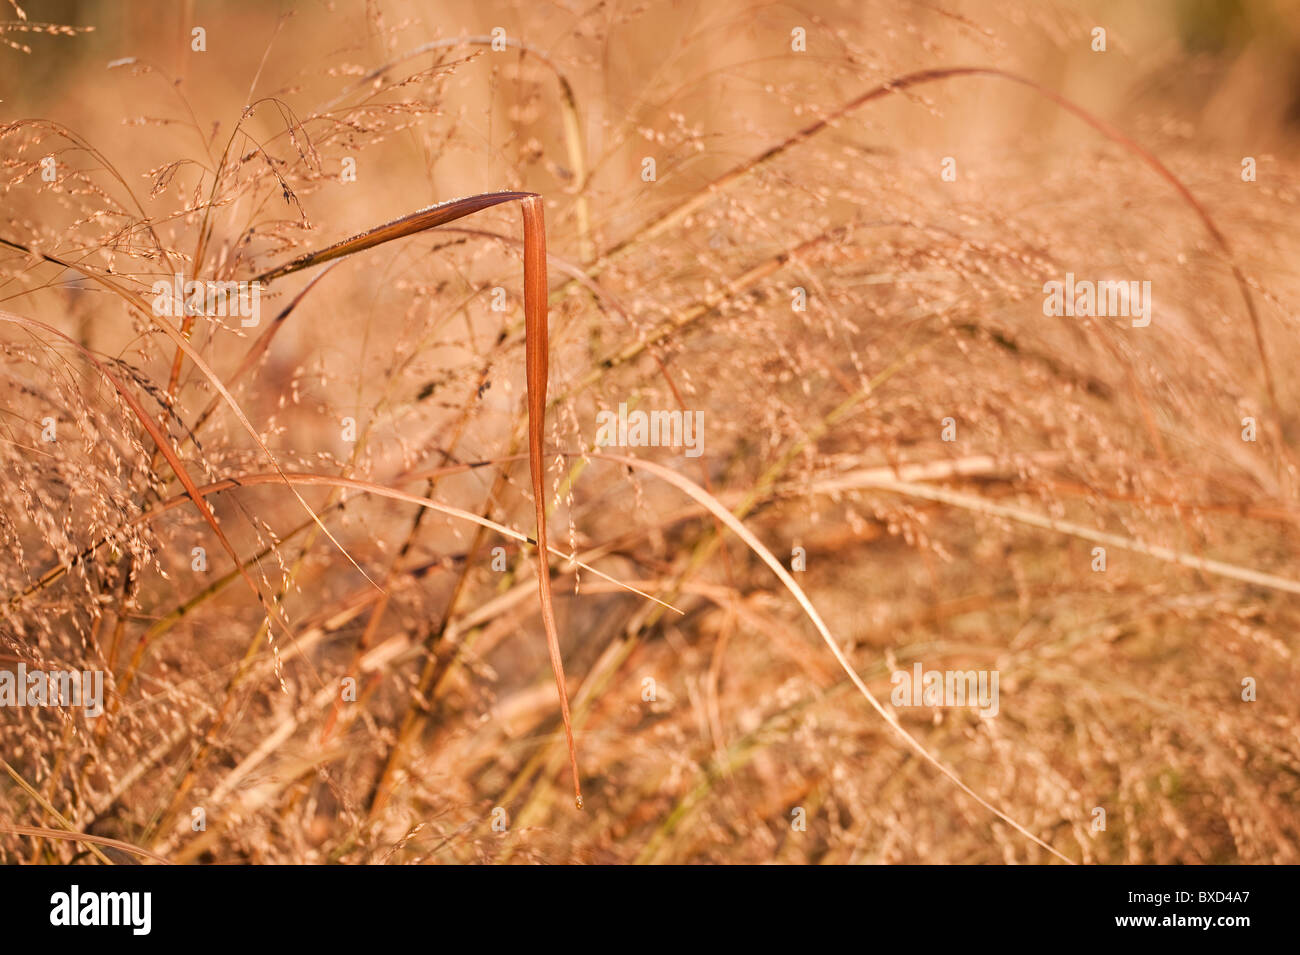 Panicum virgatum ‘Squaw’, Switchgrass, in November Stock Photo